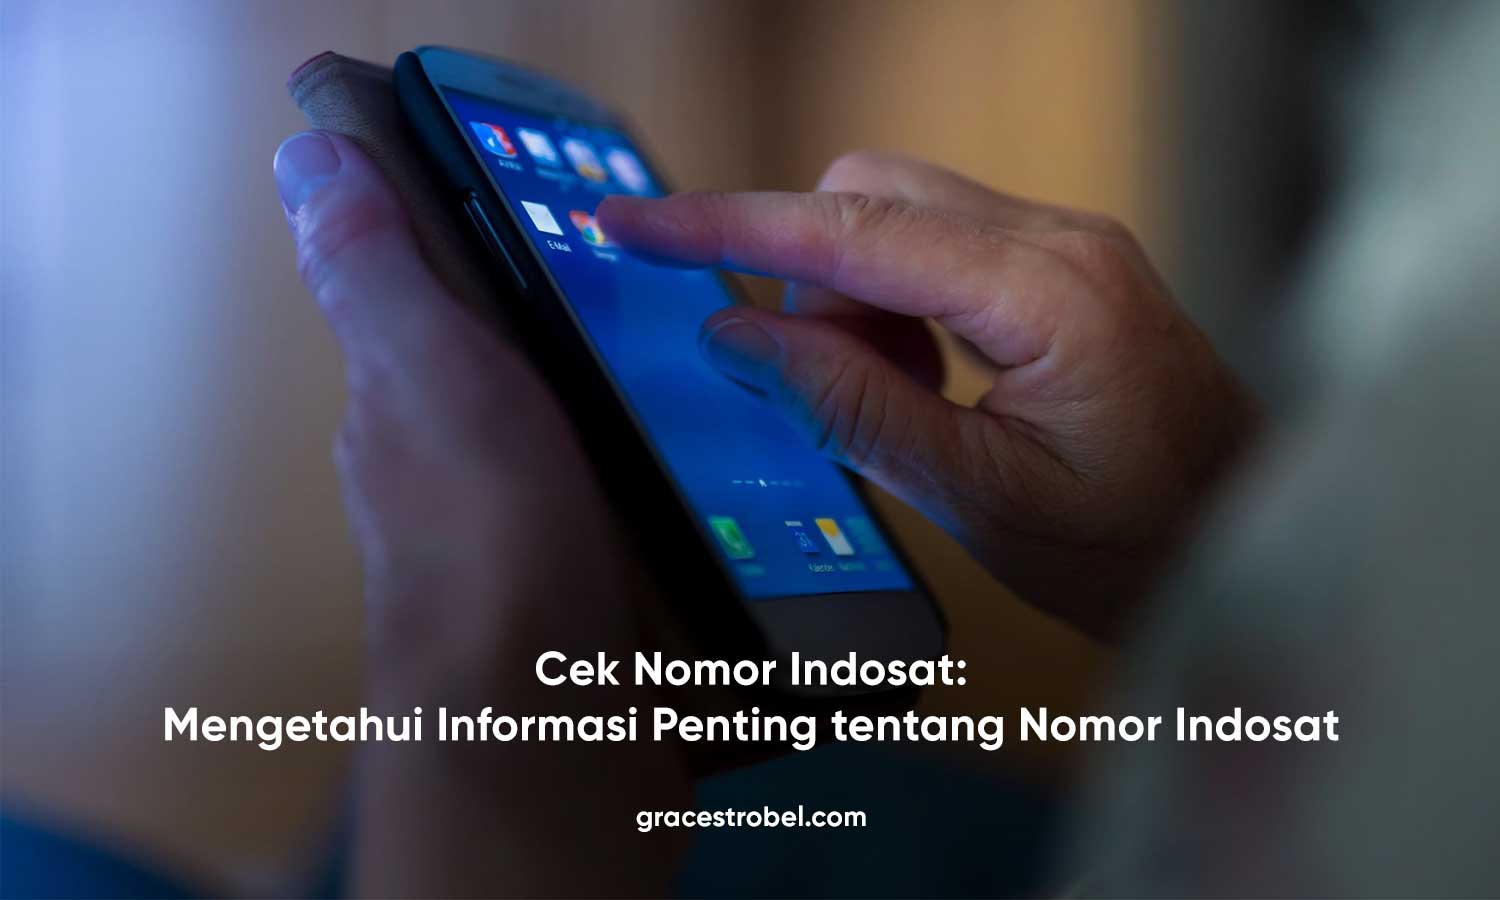 Cek Nomor Indosat: Mengetahui Informasi Penting tentang Nomor Indosat